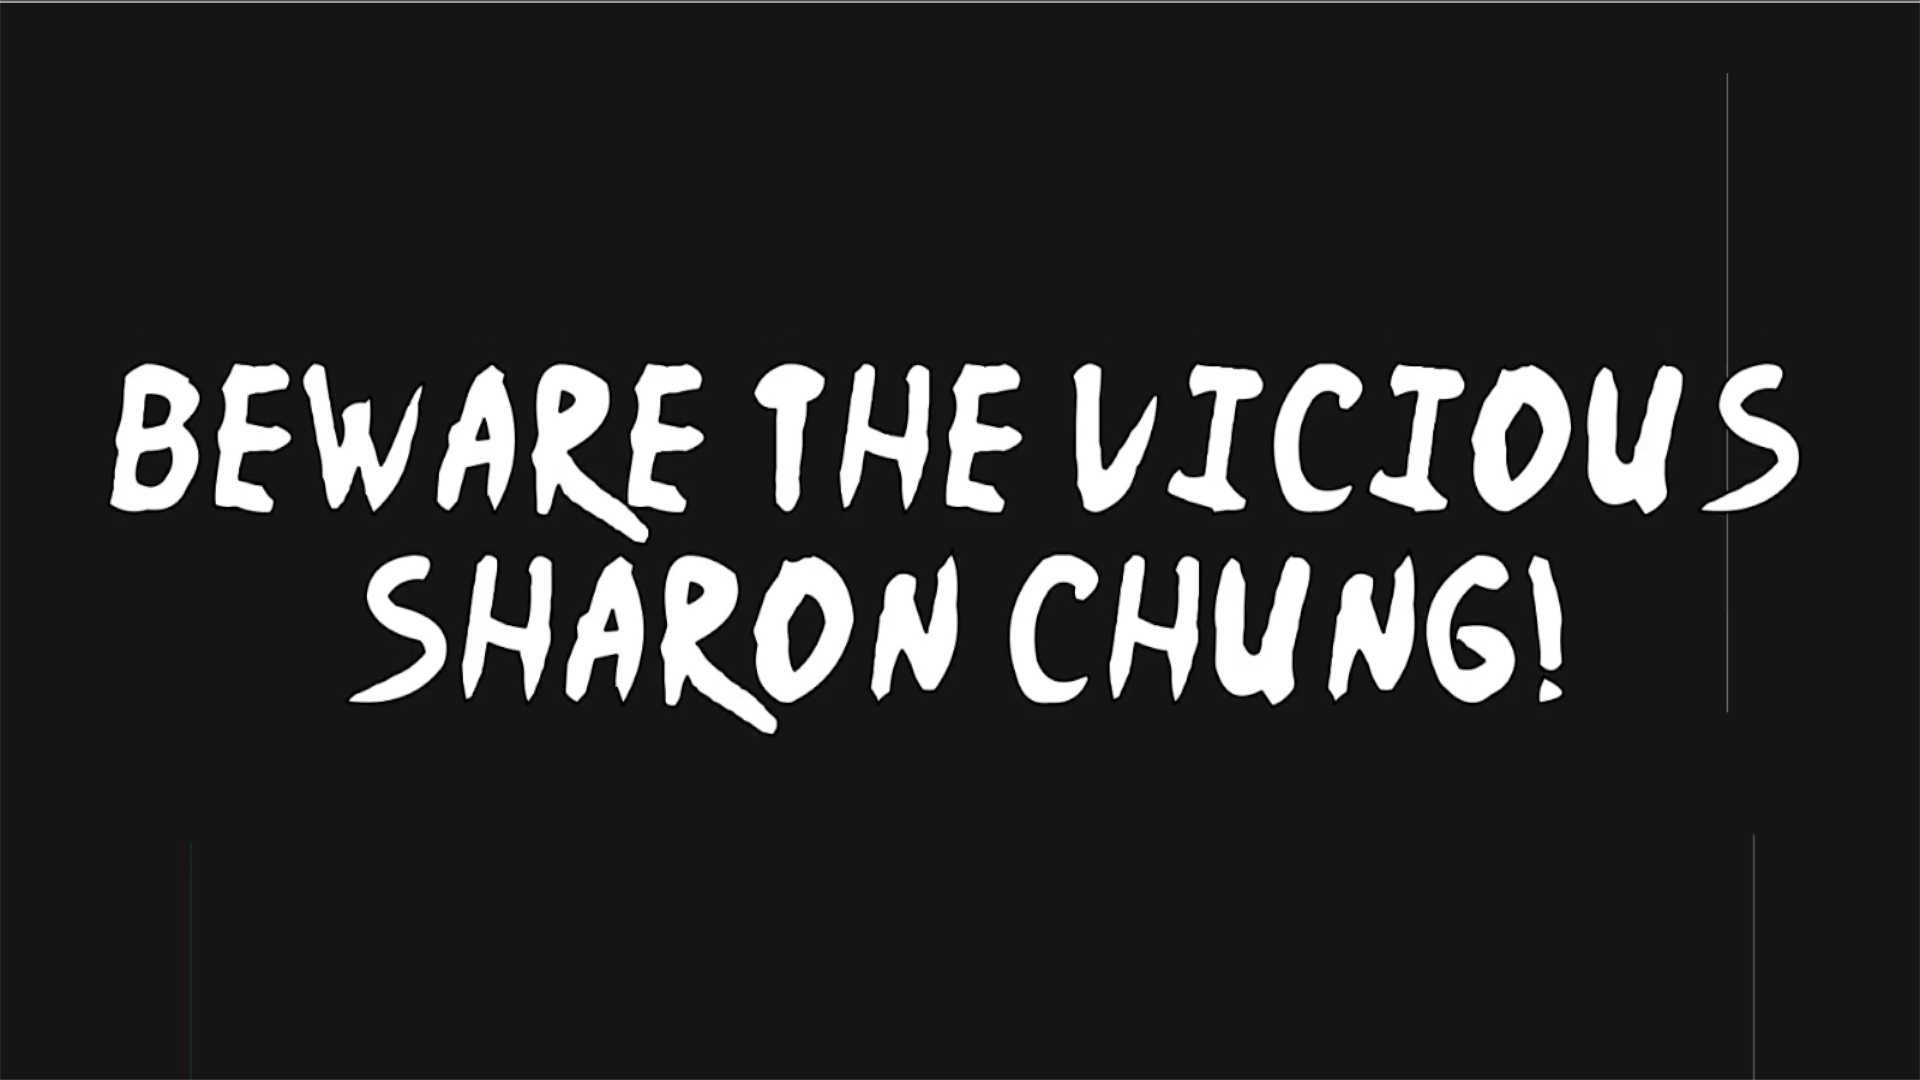 BEWARE THE VICIOUS SHARON CHUNG!